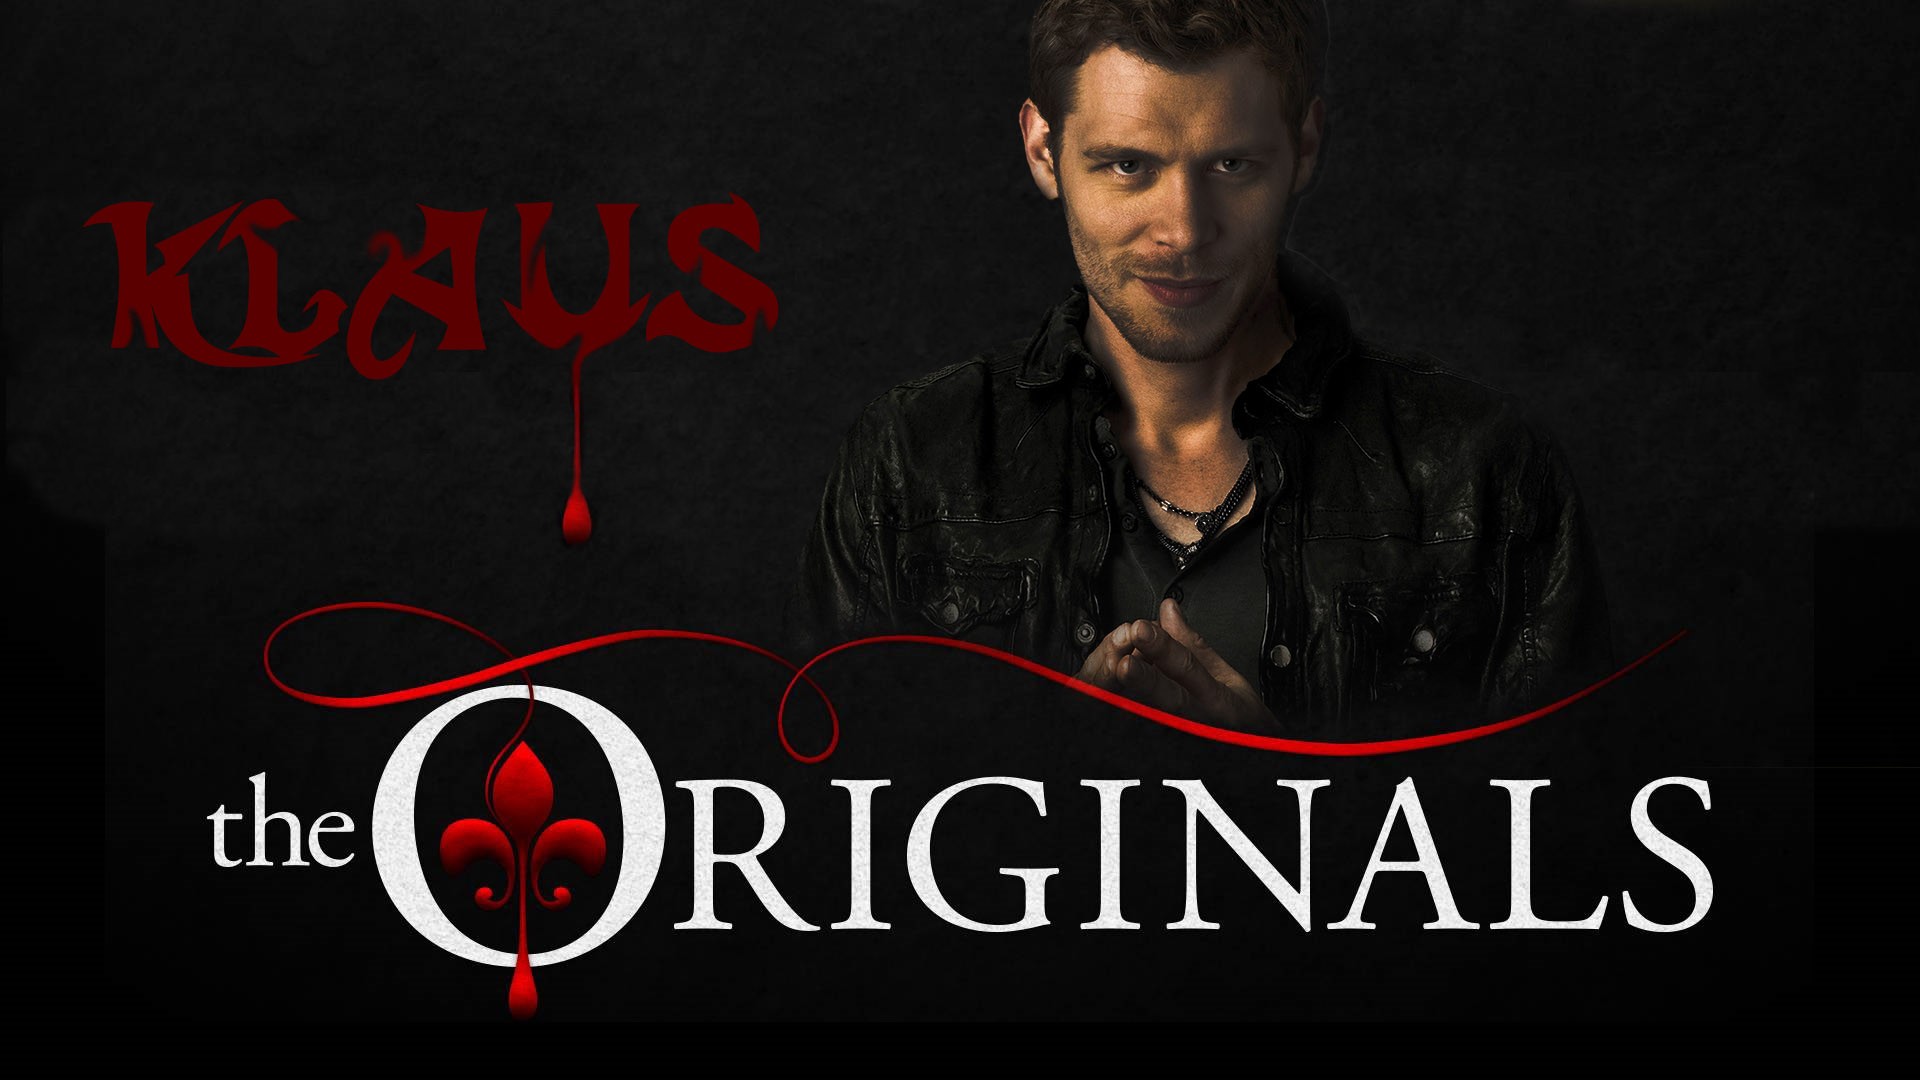 Klaus The Originals Tv Series Vampires 1920x1080